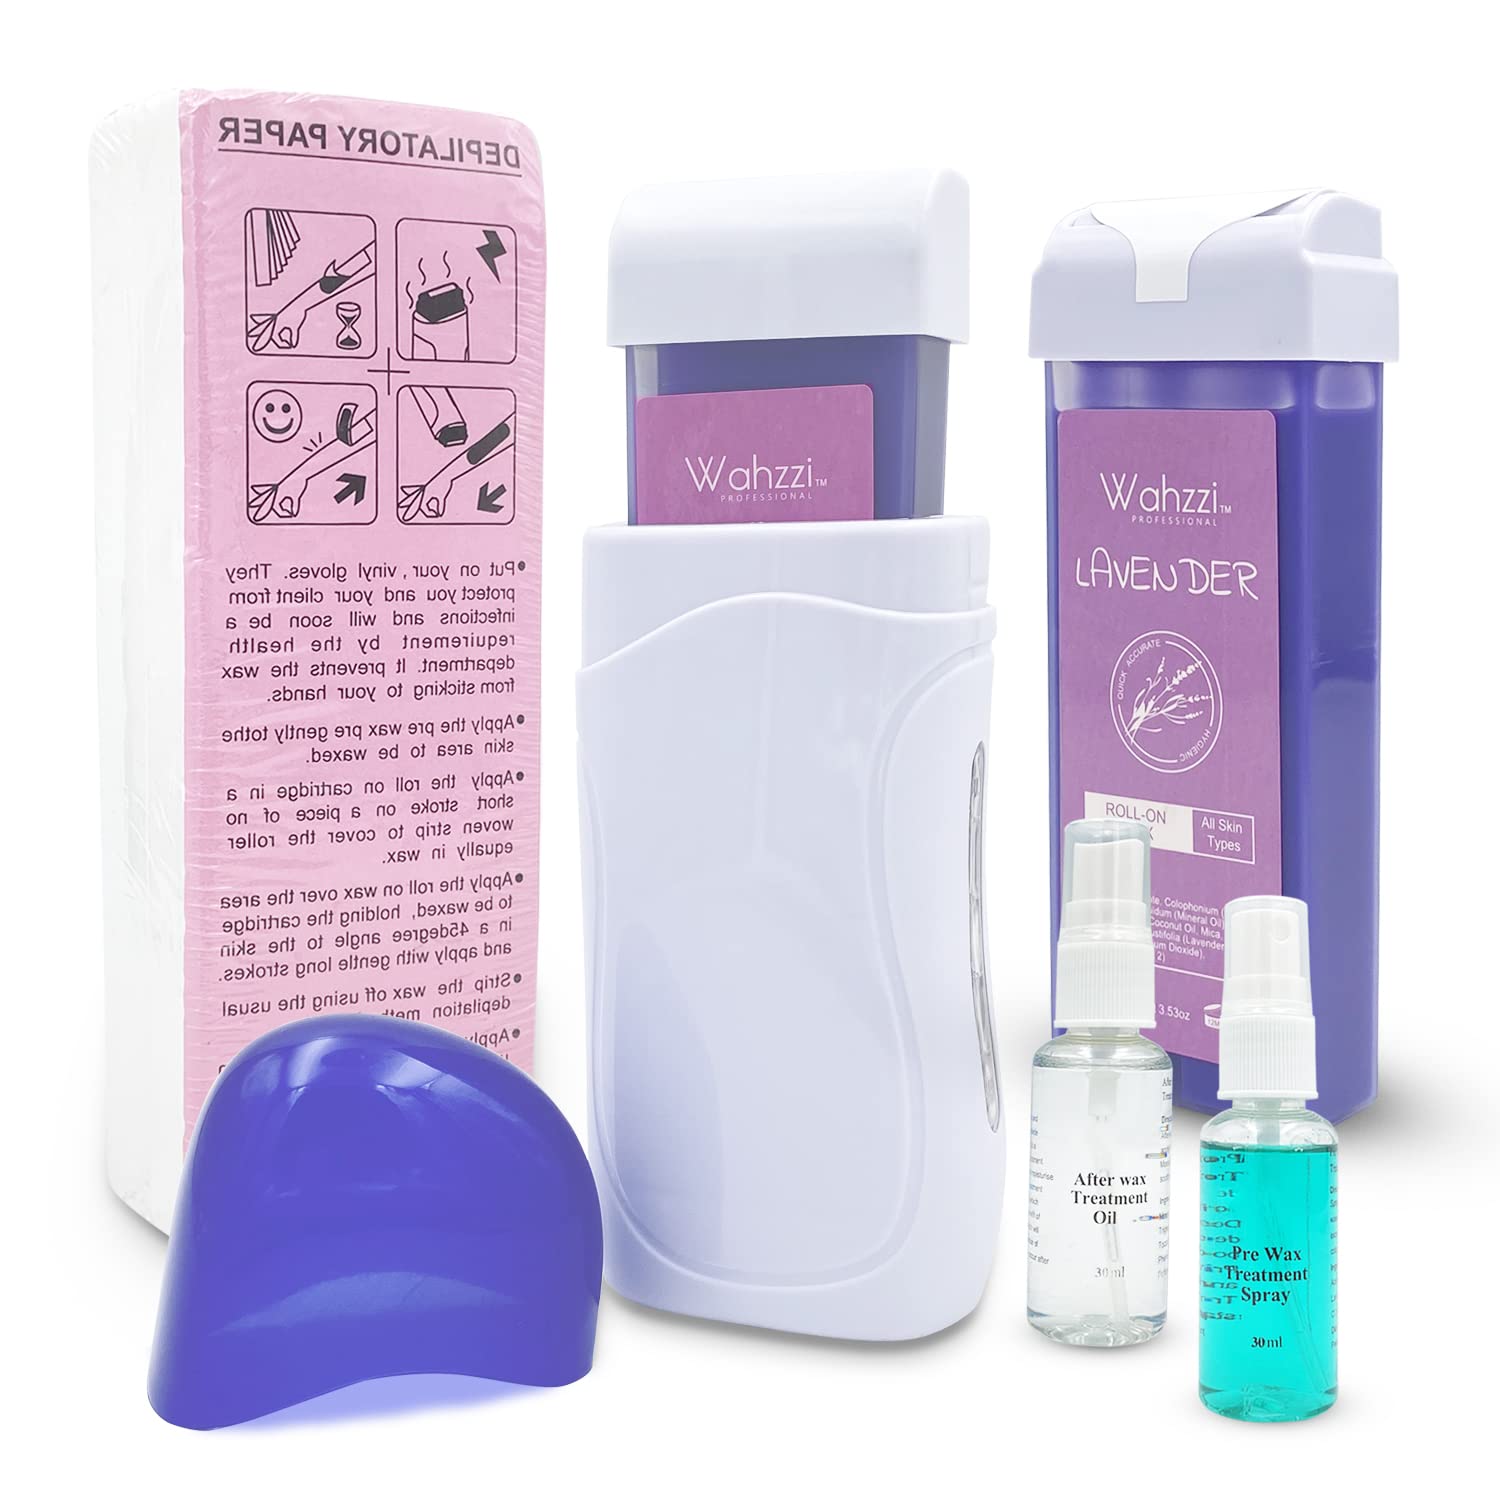 Spray Wax Kit